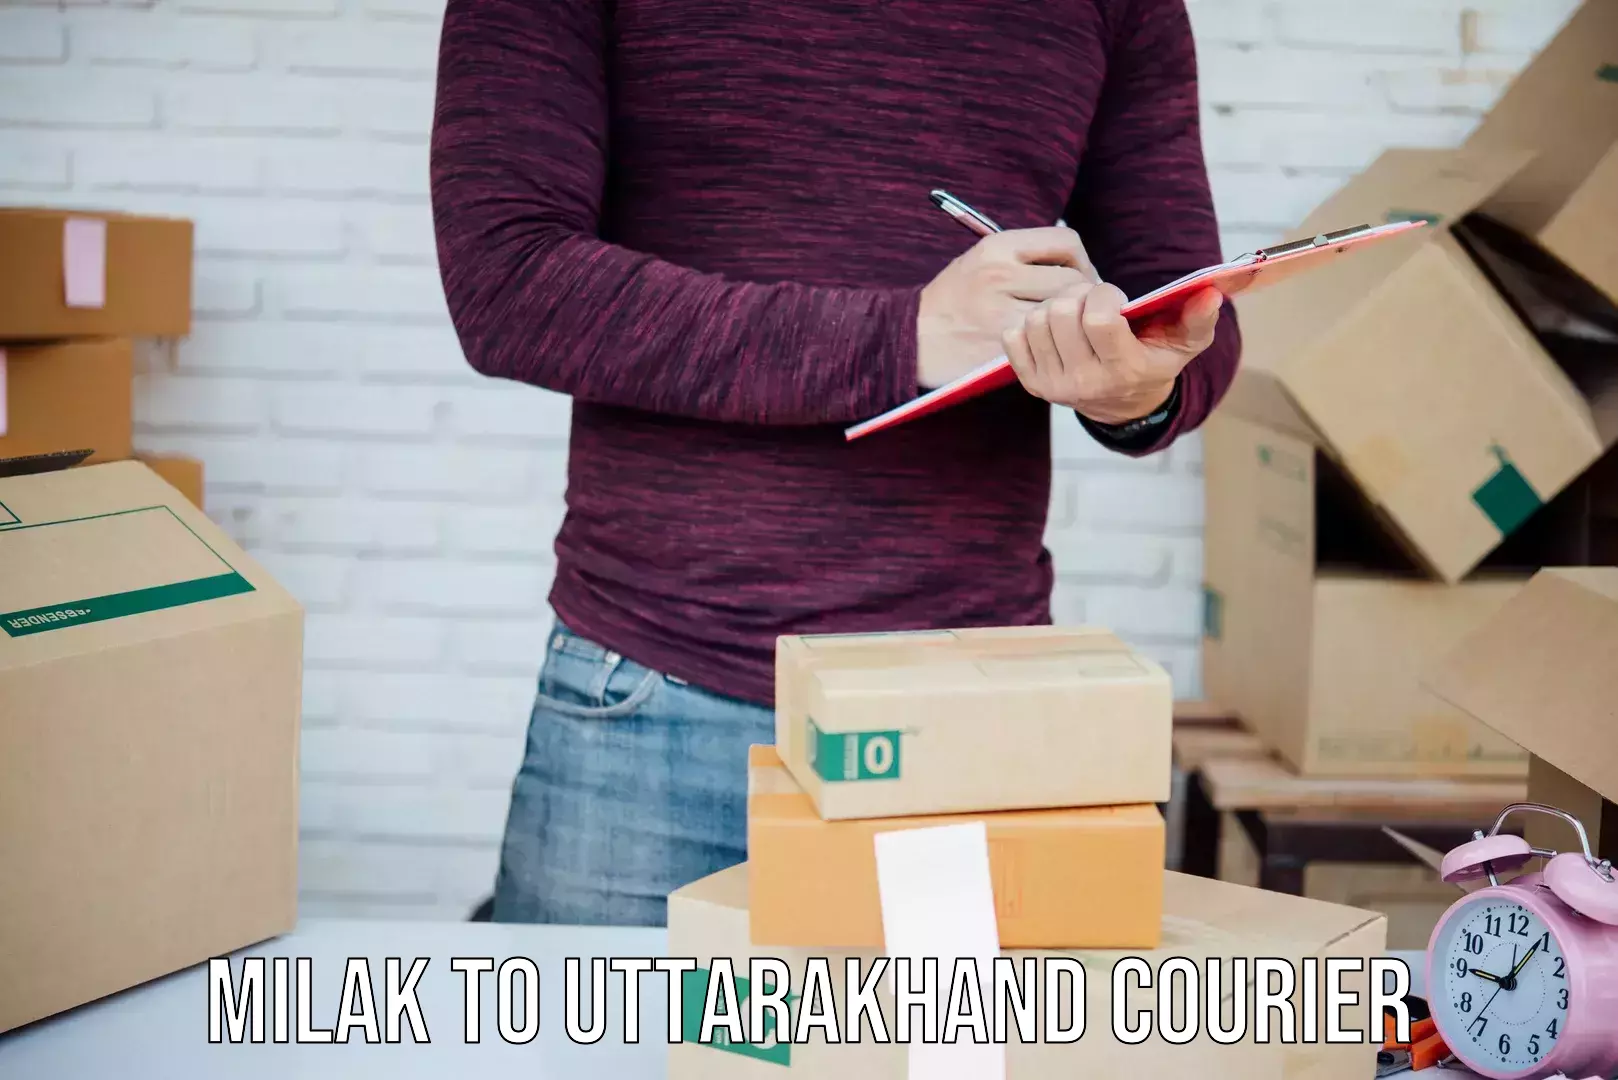 User-friendly courier app Milak to Uttarakhand